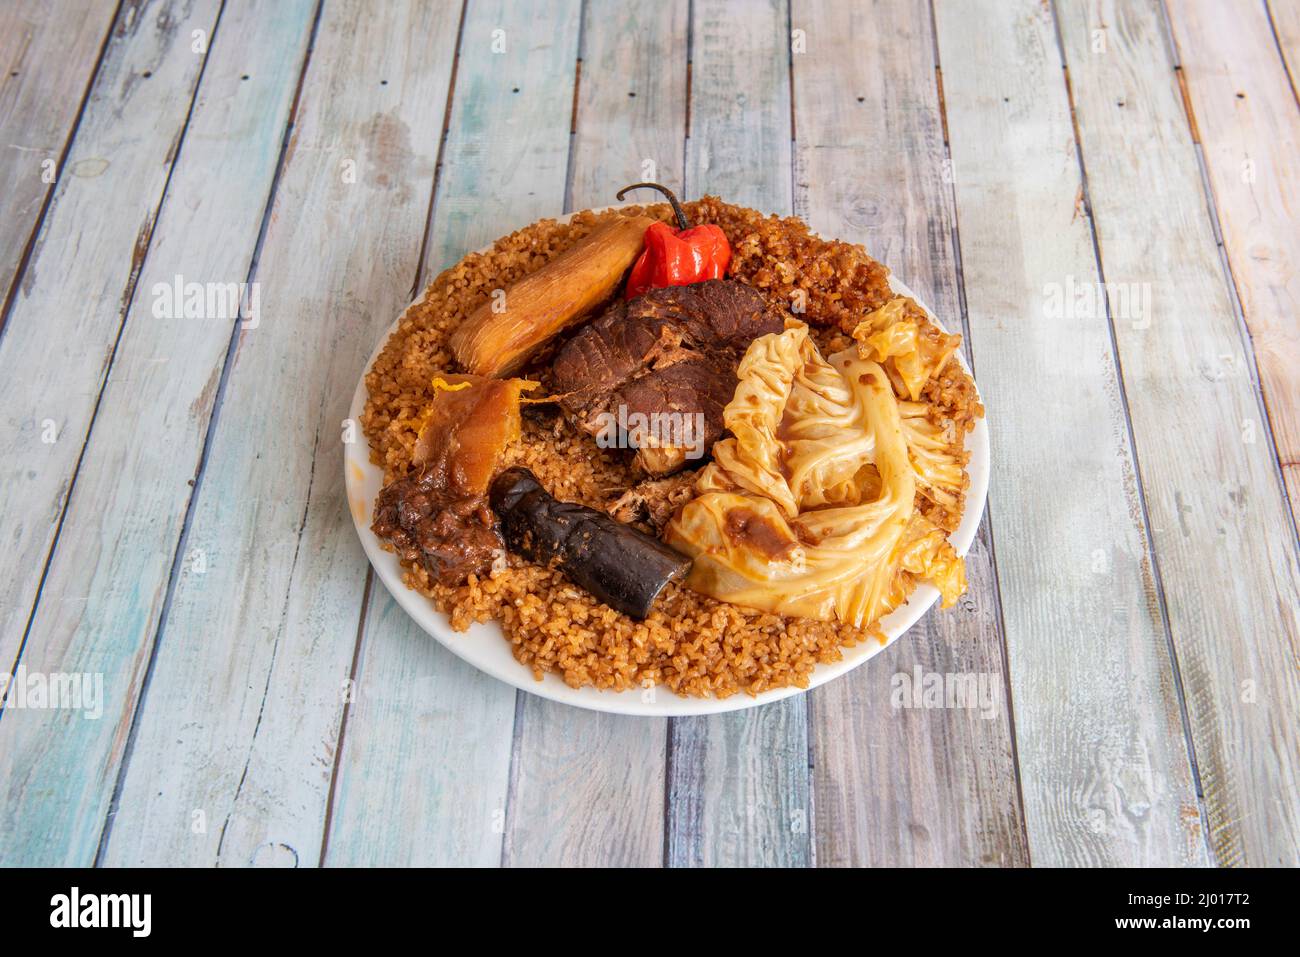 Thieboudienne o ceebu jen es un platone tradicional de Senegal​ considerado el platone nacional de este País.​ se compone palmente de arroz, pescado Foto Stock